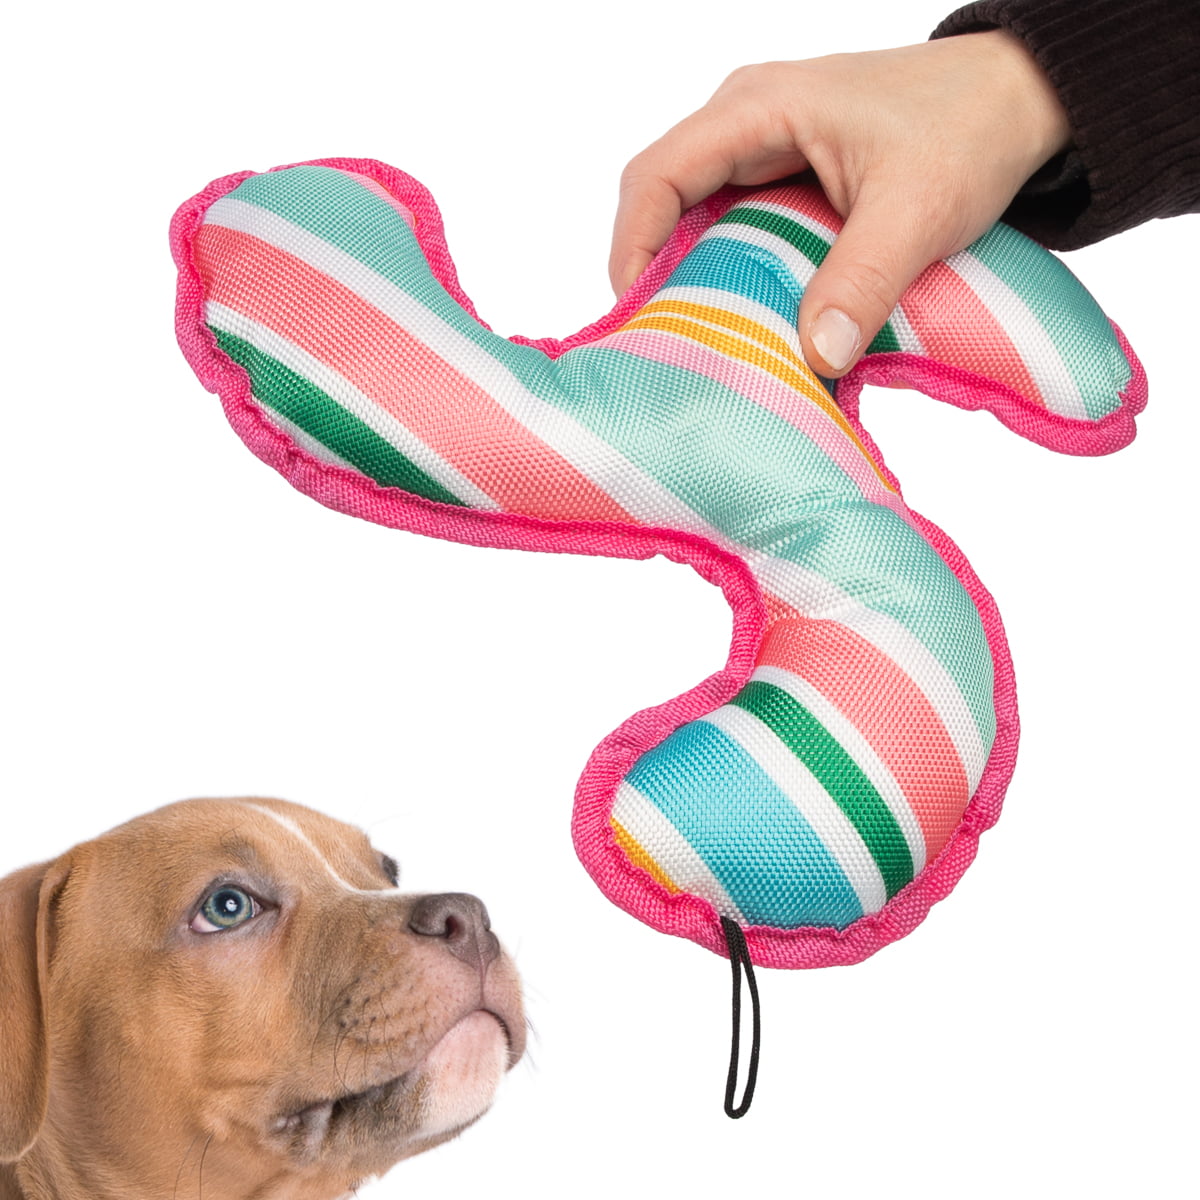 dog fetch toy